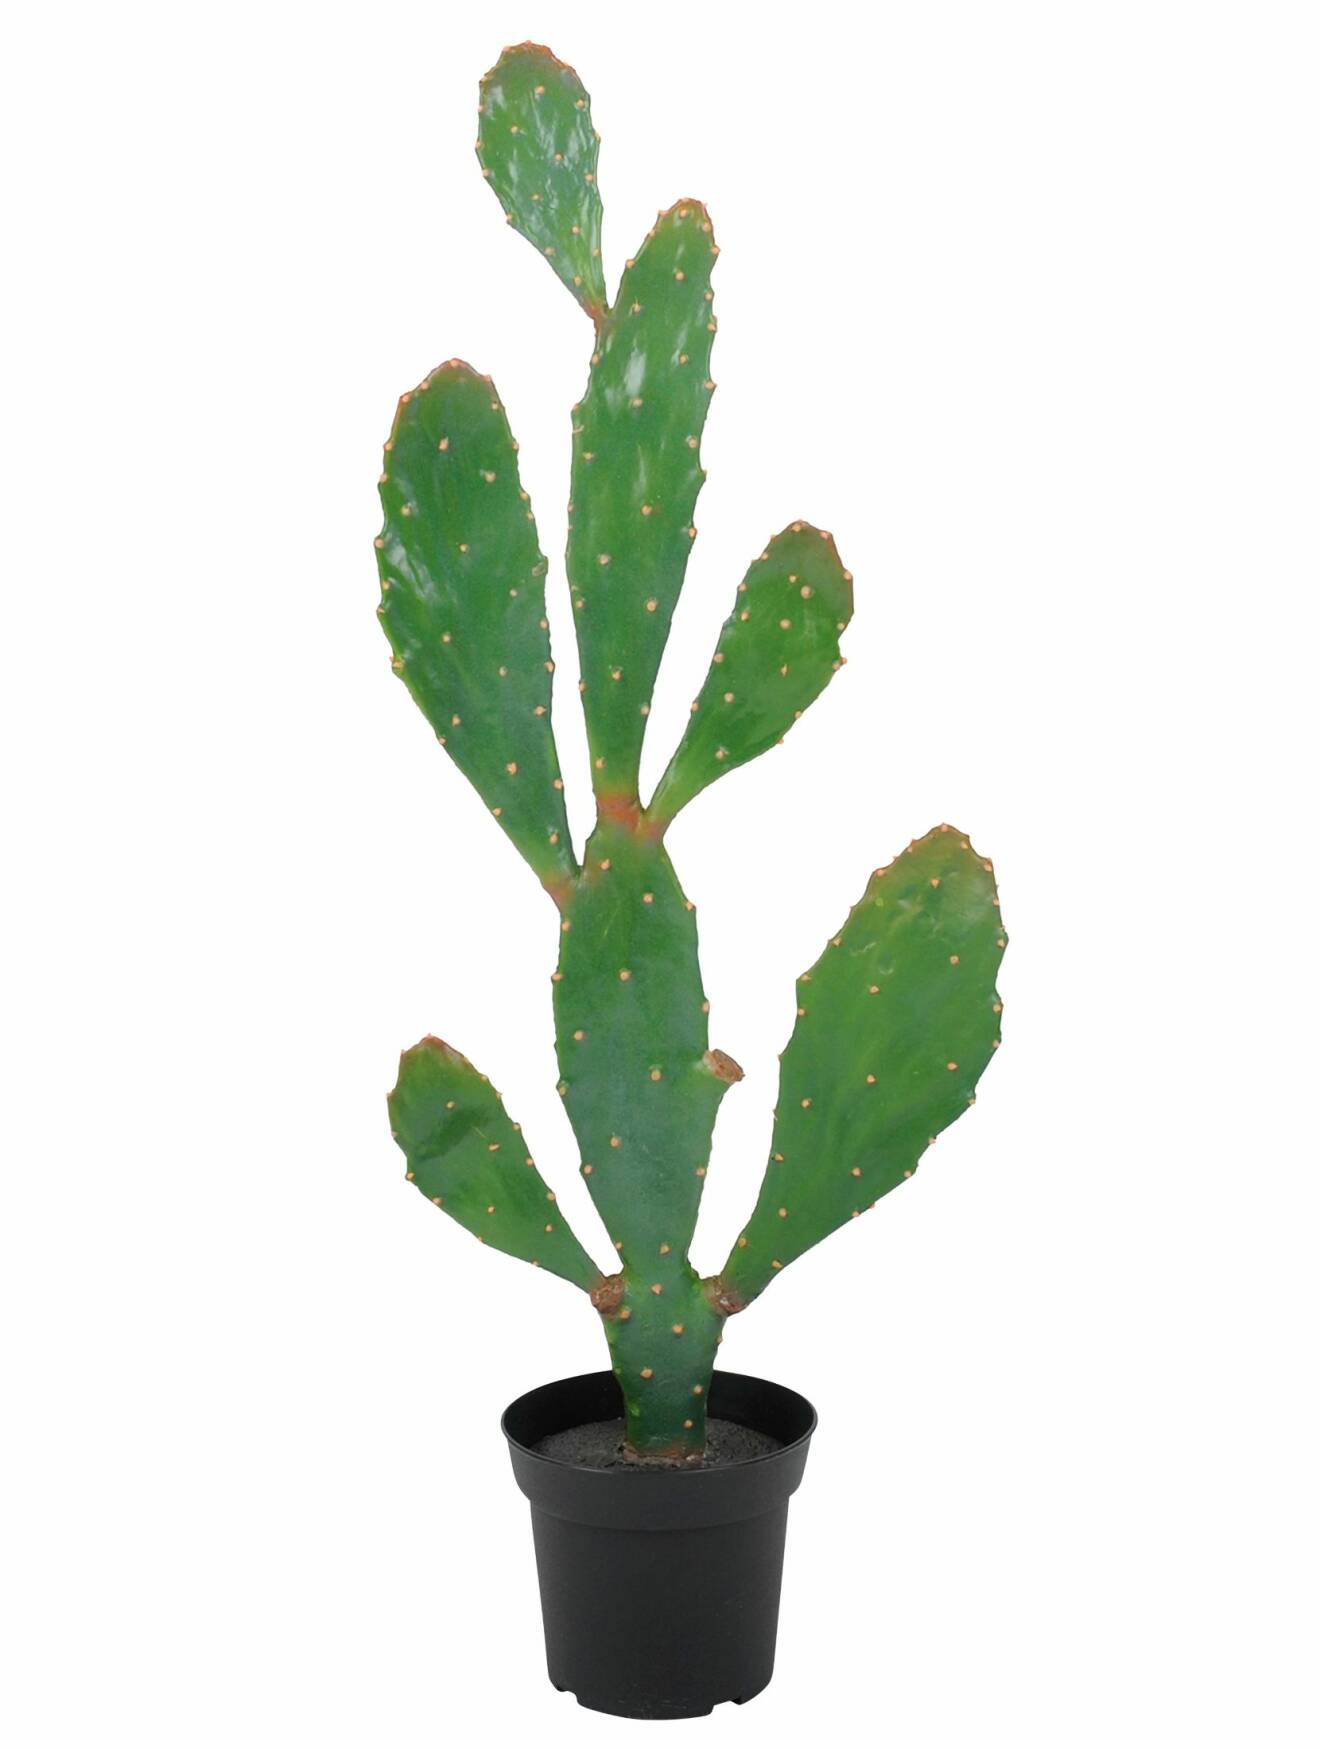 Grön konstgjord kaktus med många platta armar och ljusa prickar.